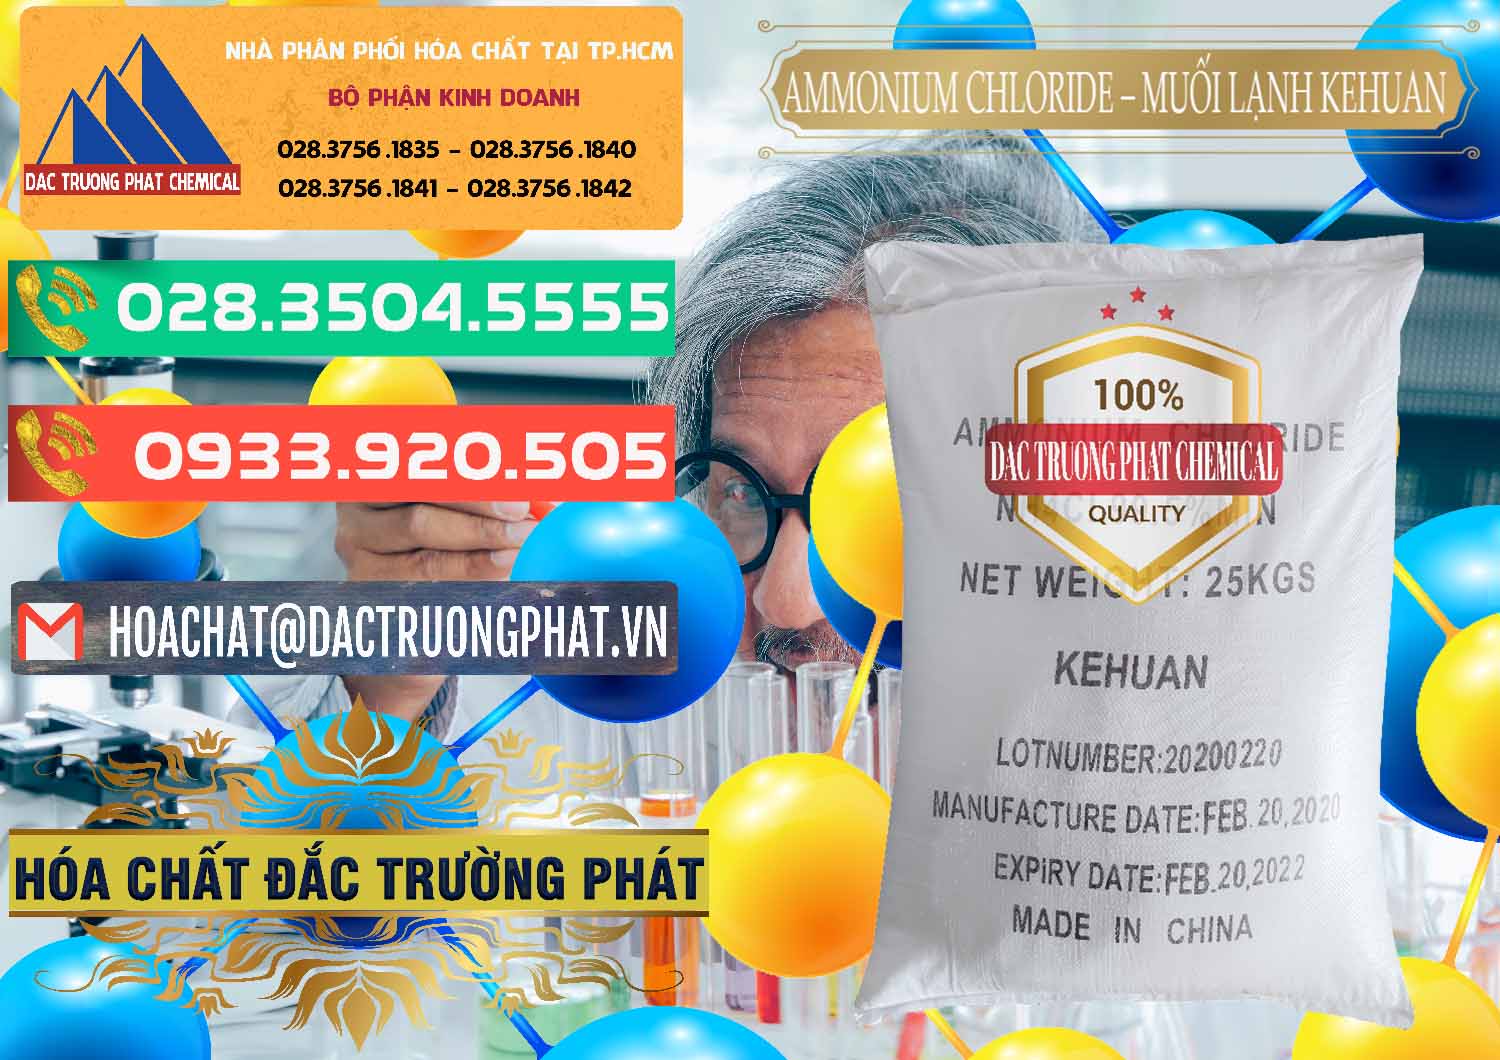 Cty chuyên bán và cung ứng Ammonium Chloride – NH4CL Muối Lạnh Kehuan Trung Quốc China - 0022 - Công ty cung cấp và nhập khẩu hóa chất tại TP.HCM - congtyhoachat.com.vn